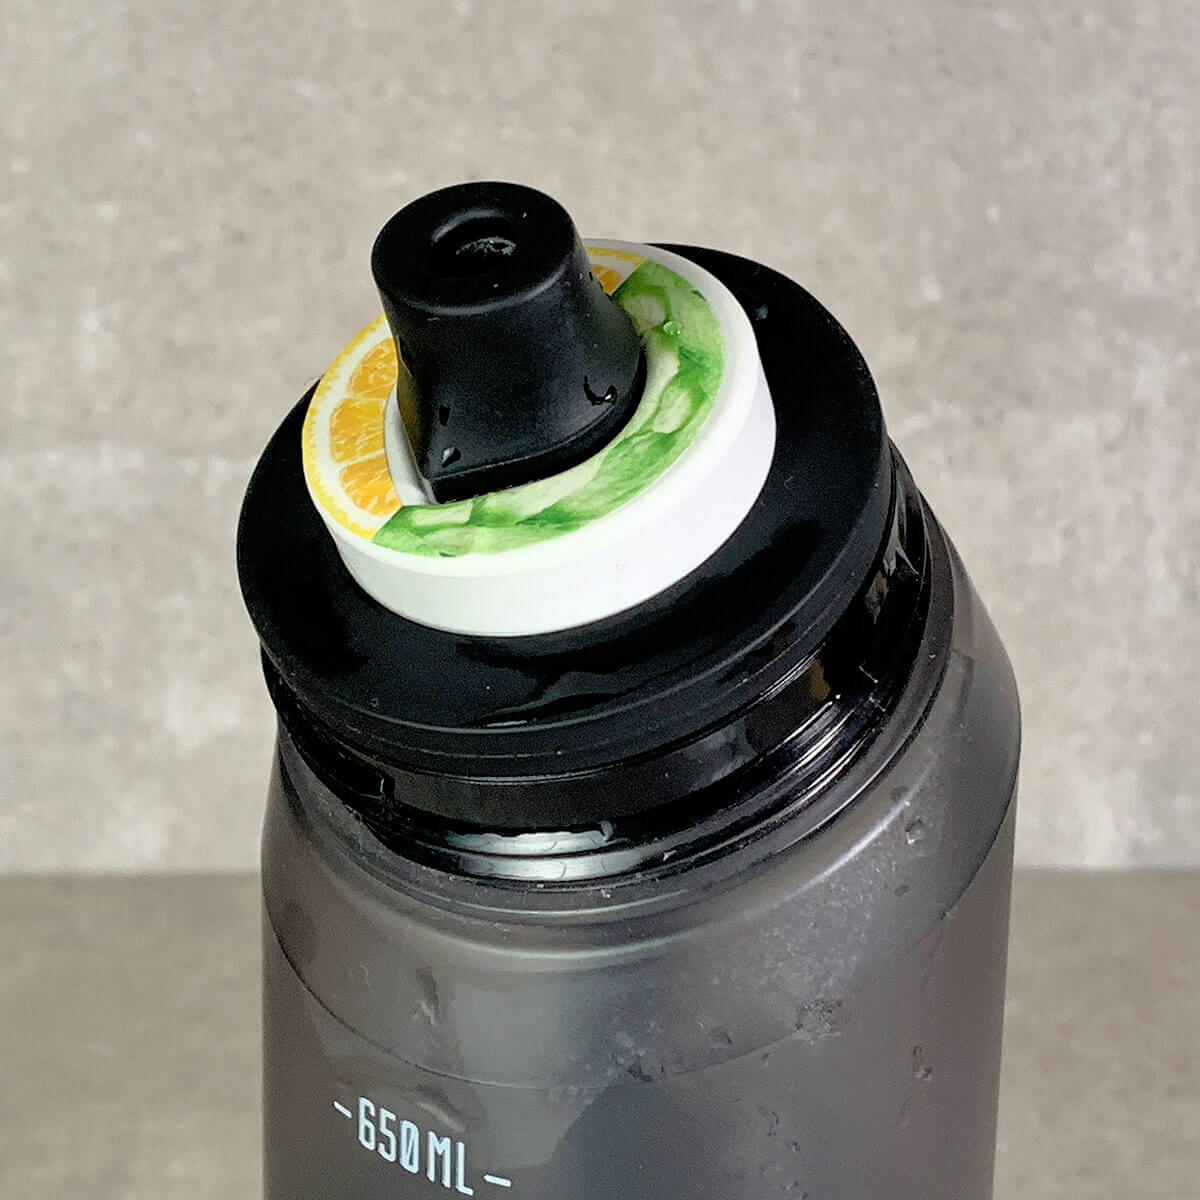 Im Test: Die air up Flasche – das Geruchs-Trink-System